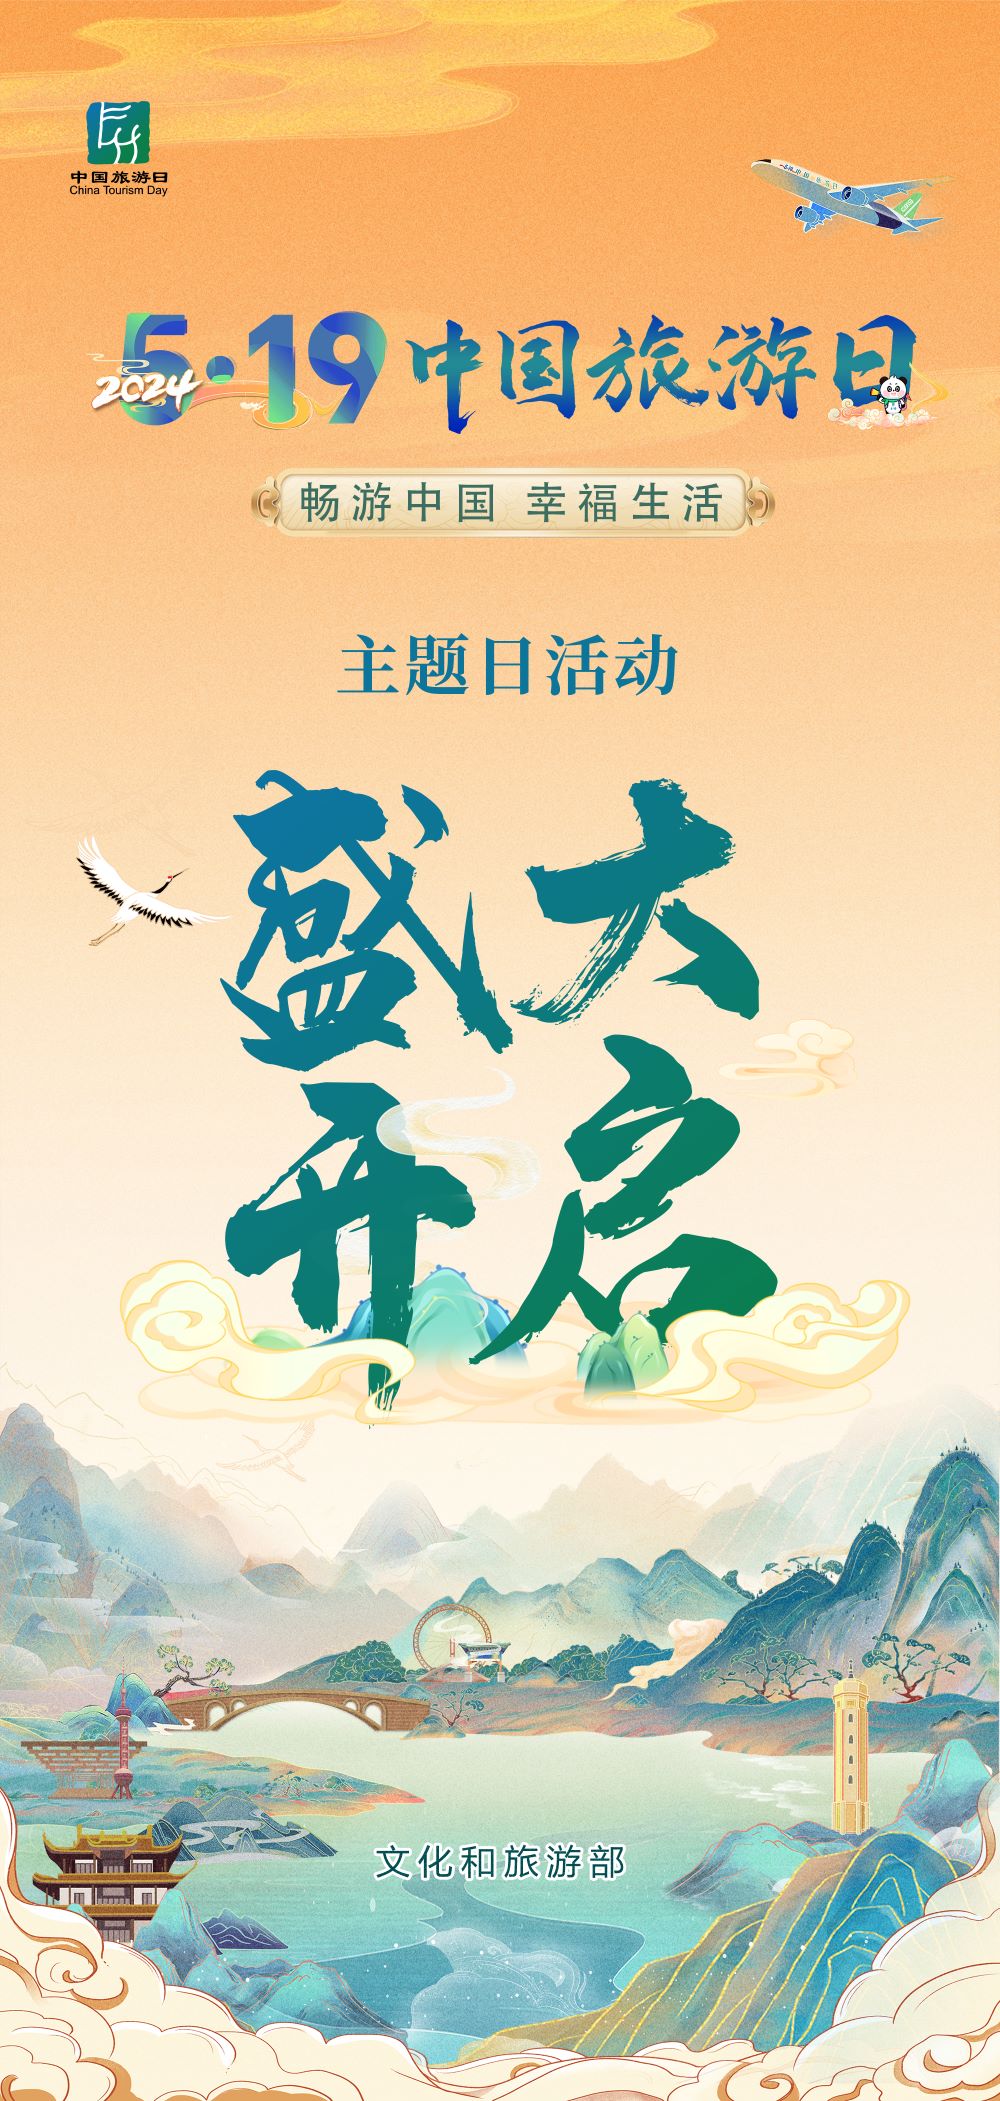 2024年5月19日是第14个中国旅游日,愿您畅游中国,享受幸福生活